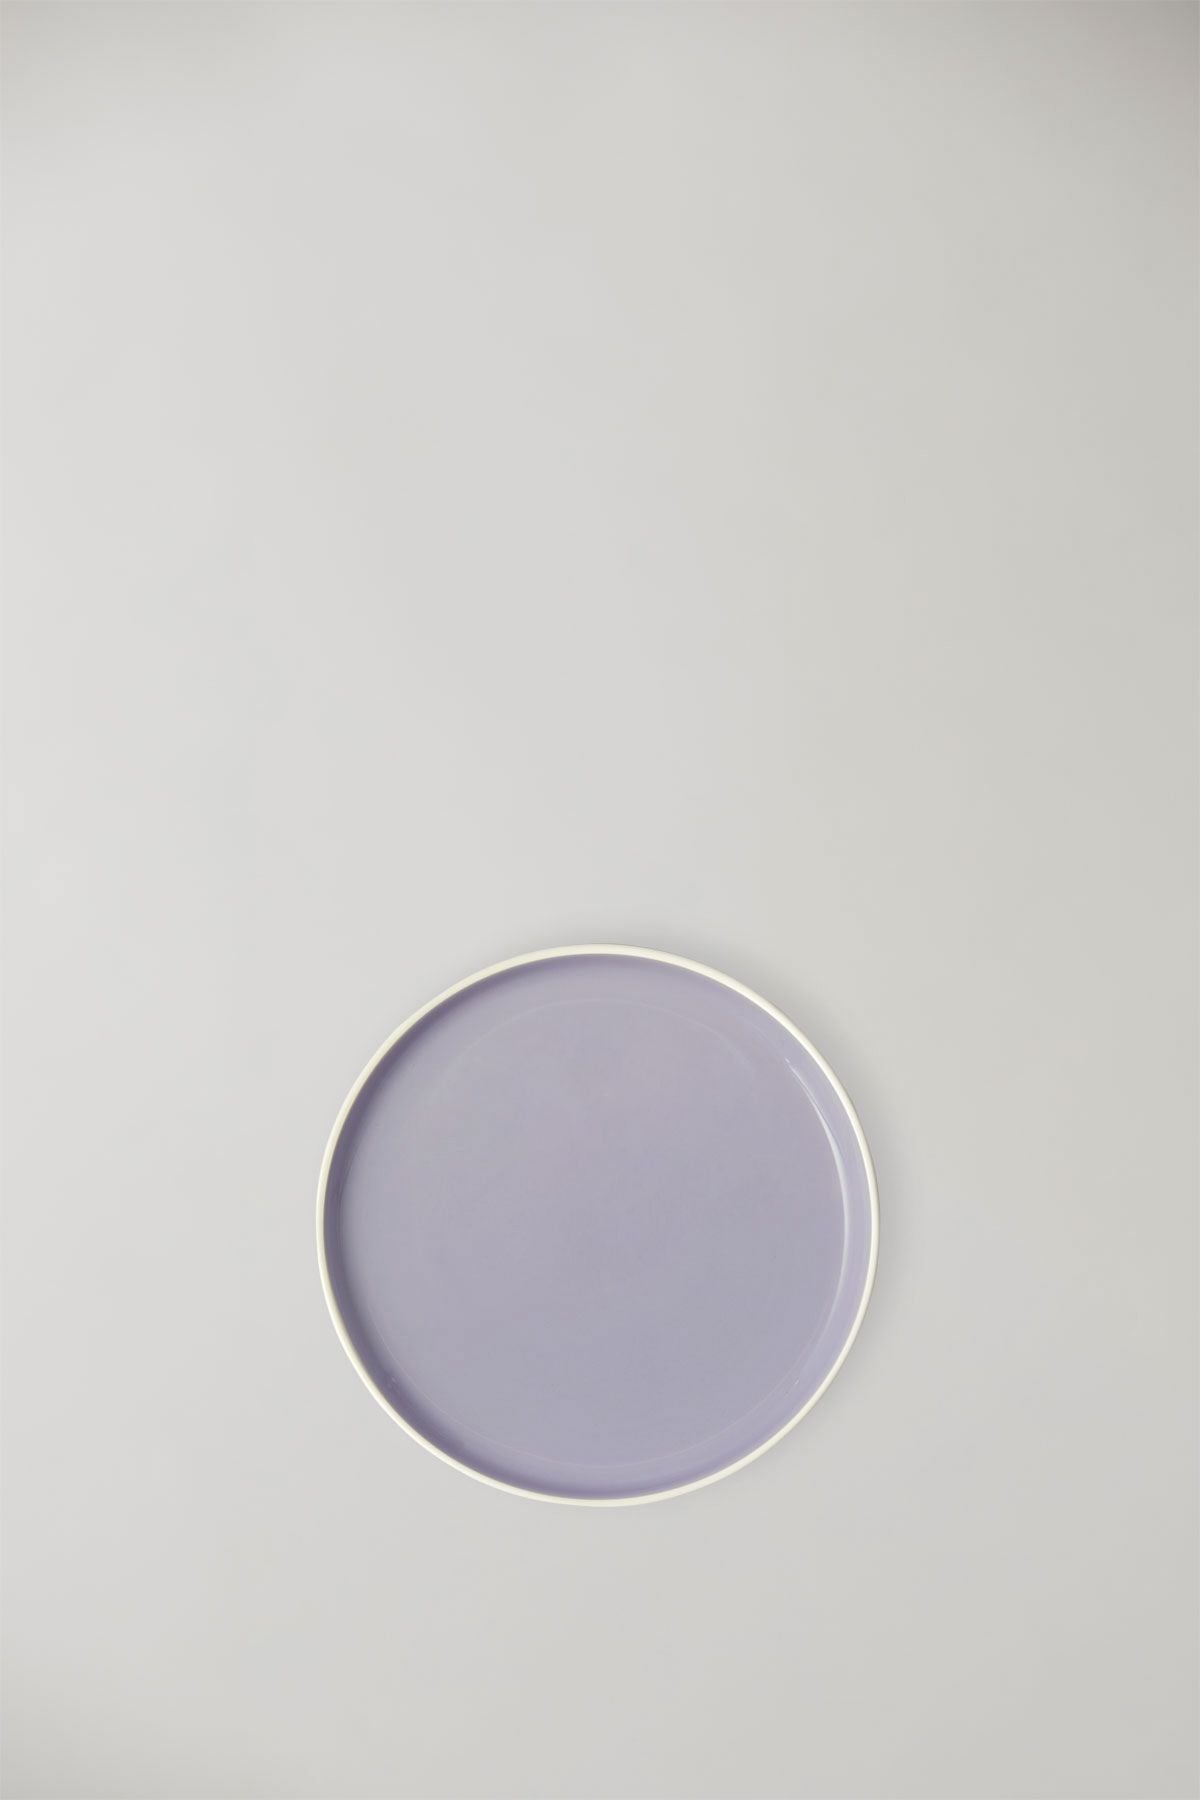 Estudio sobre Clayware Conjunto de 2 placas medianas, marfil/luz púrpura